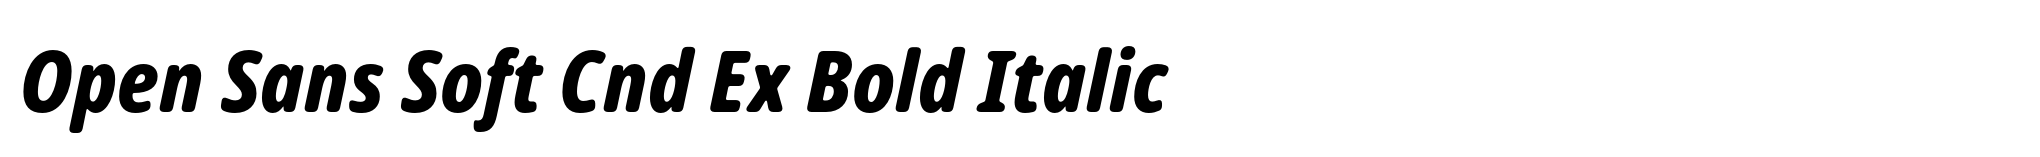 Open Sans Soft Cnd Ex Bold Italic image